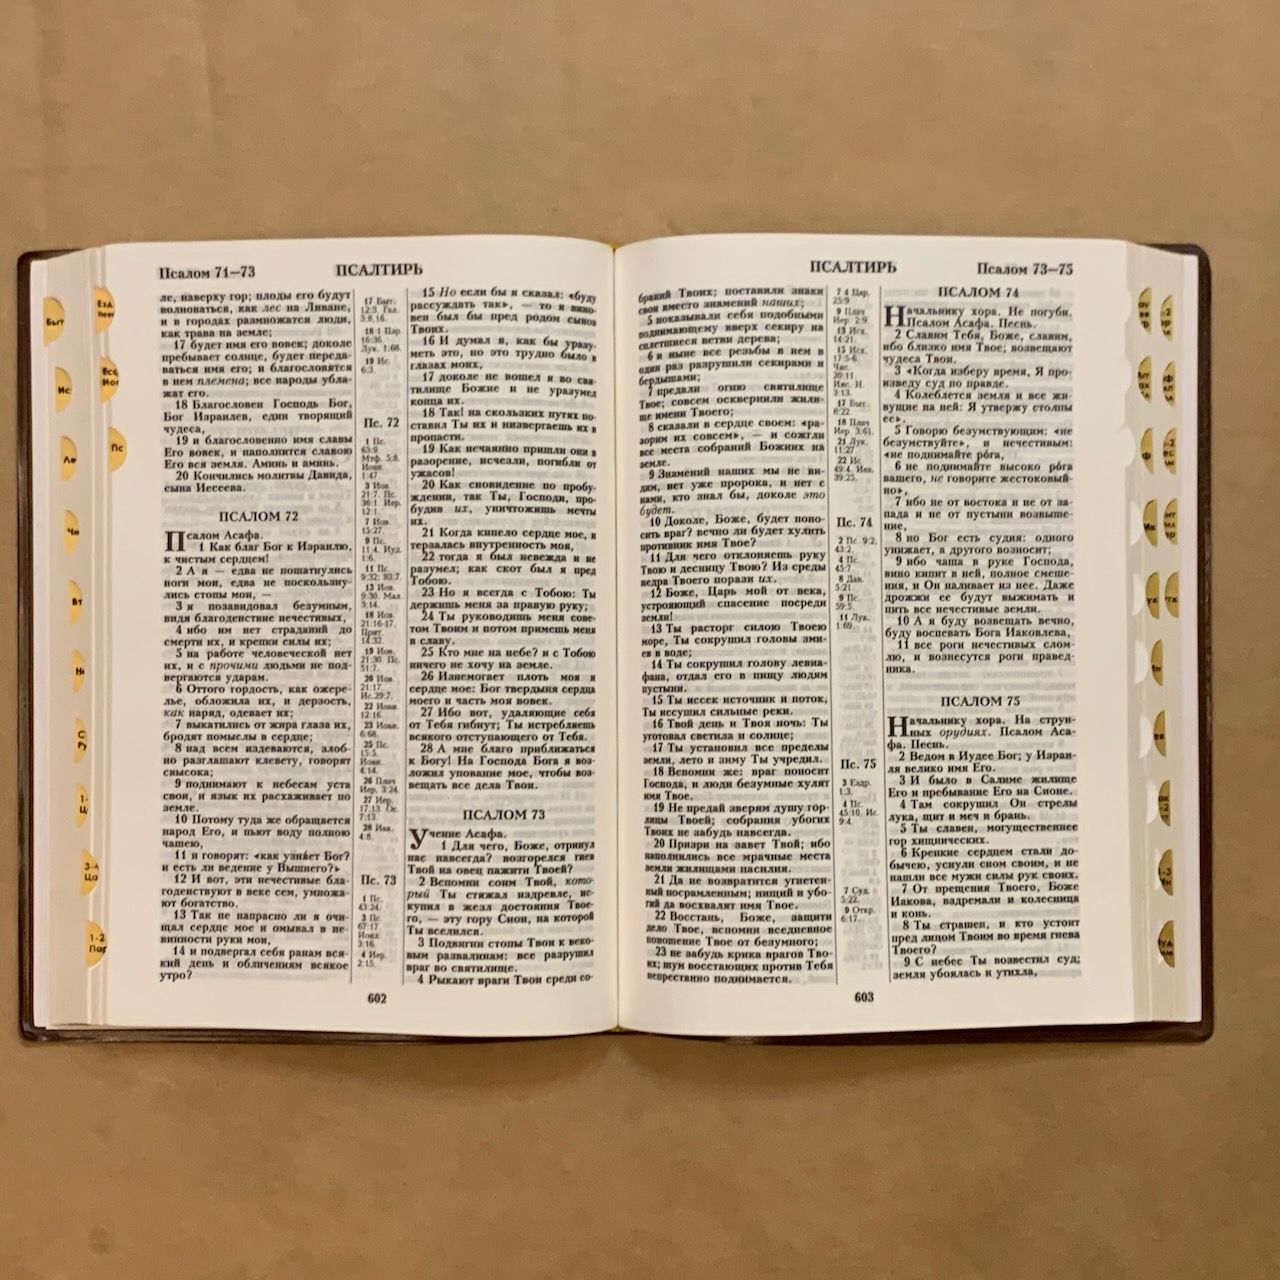 Библия 076TI код A3,  дизайн "золотая рамка растительный орнамент",  цвет темно-коричневый, переплет из искусственной кожи с индексами